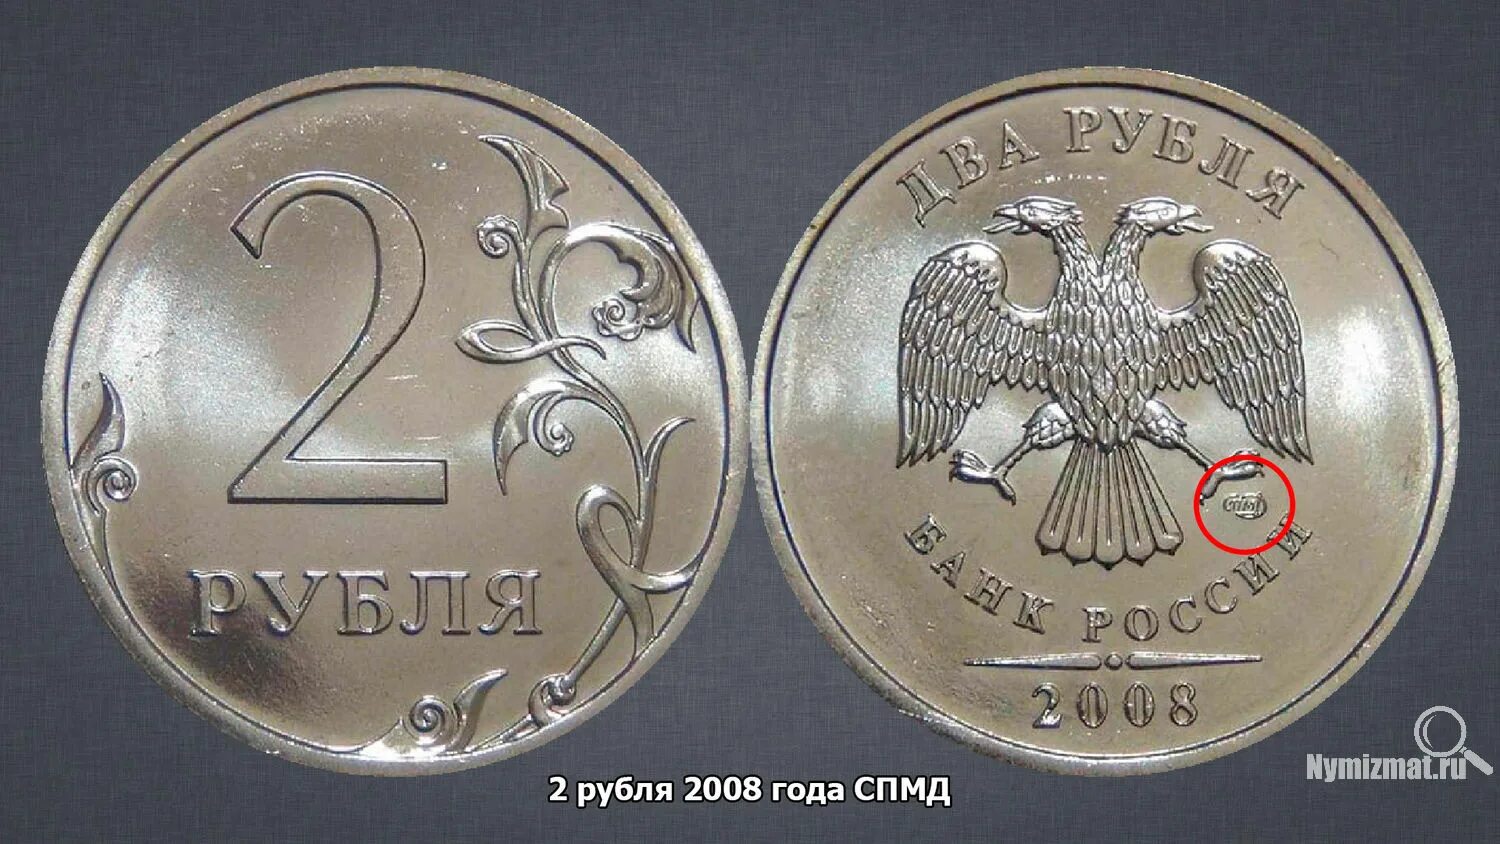 2 рубля цена. 2 Рубля 2008 года. 1 Рубль 2008 года. Редкие монеты 2 рубля 2008. Монета 1 рубль 2008 года редкая.